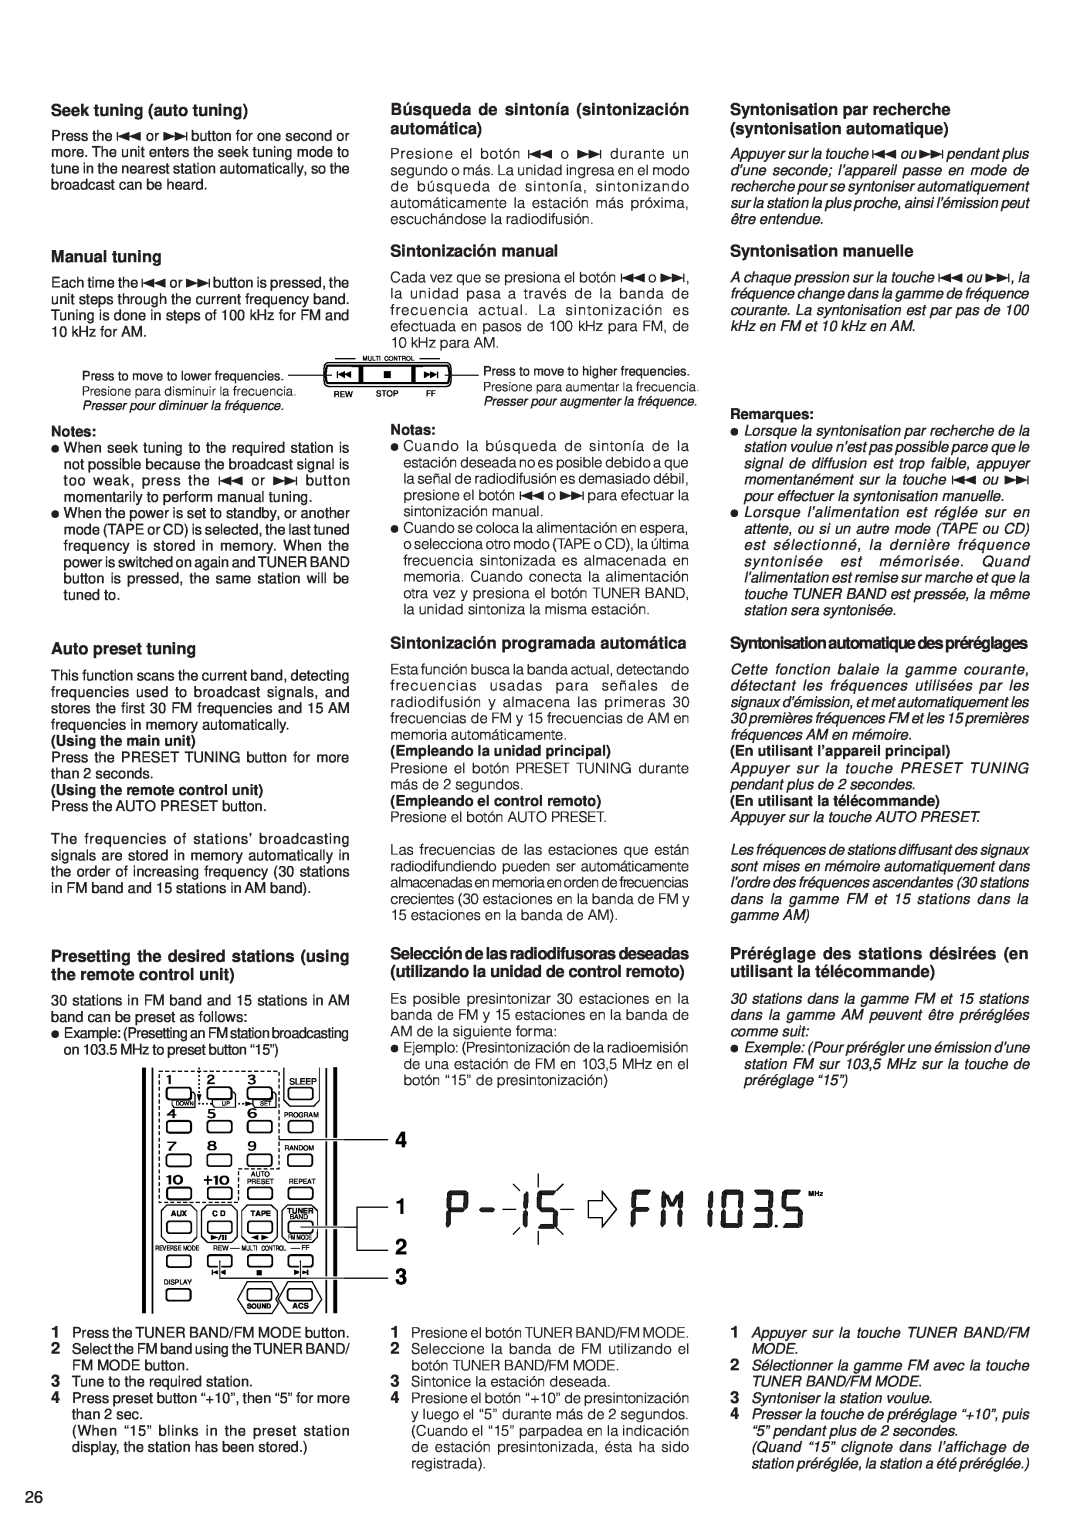 JVC RV-B99 manual 4 1 2 3, Seek tuning auto tuning, Búsqueda de sintonía sintonización automática, Manual tuning 